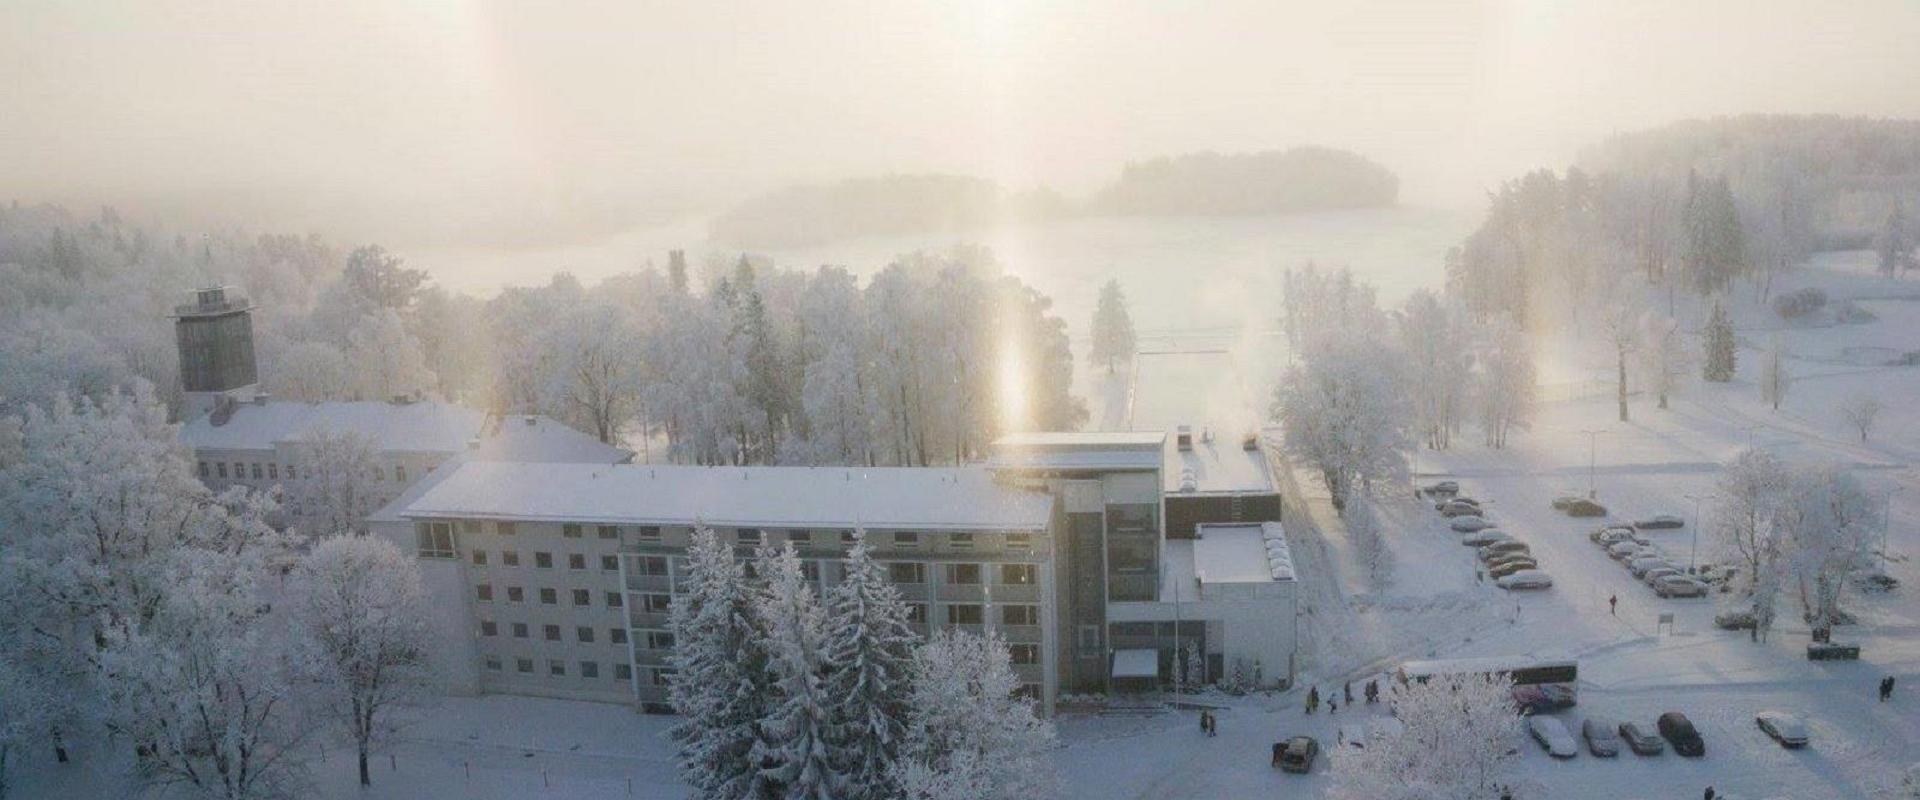 Pühajärve Spa & Holiday Resort in winter